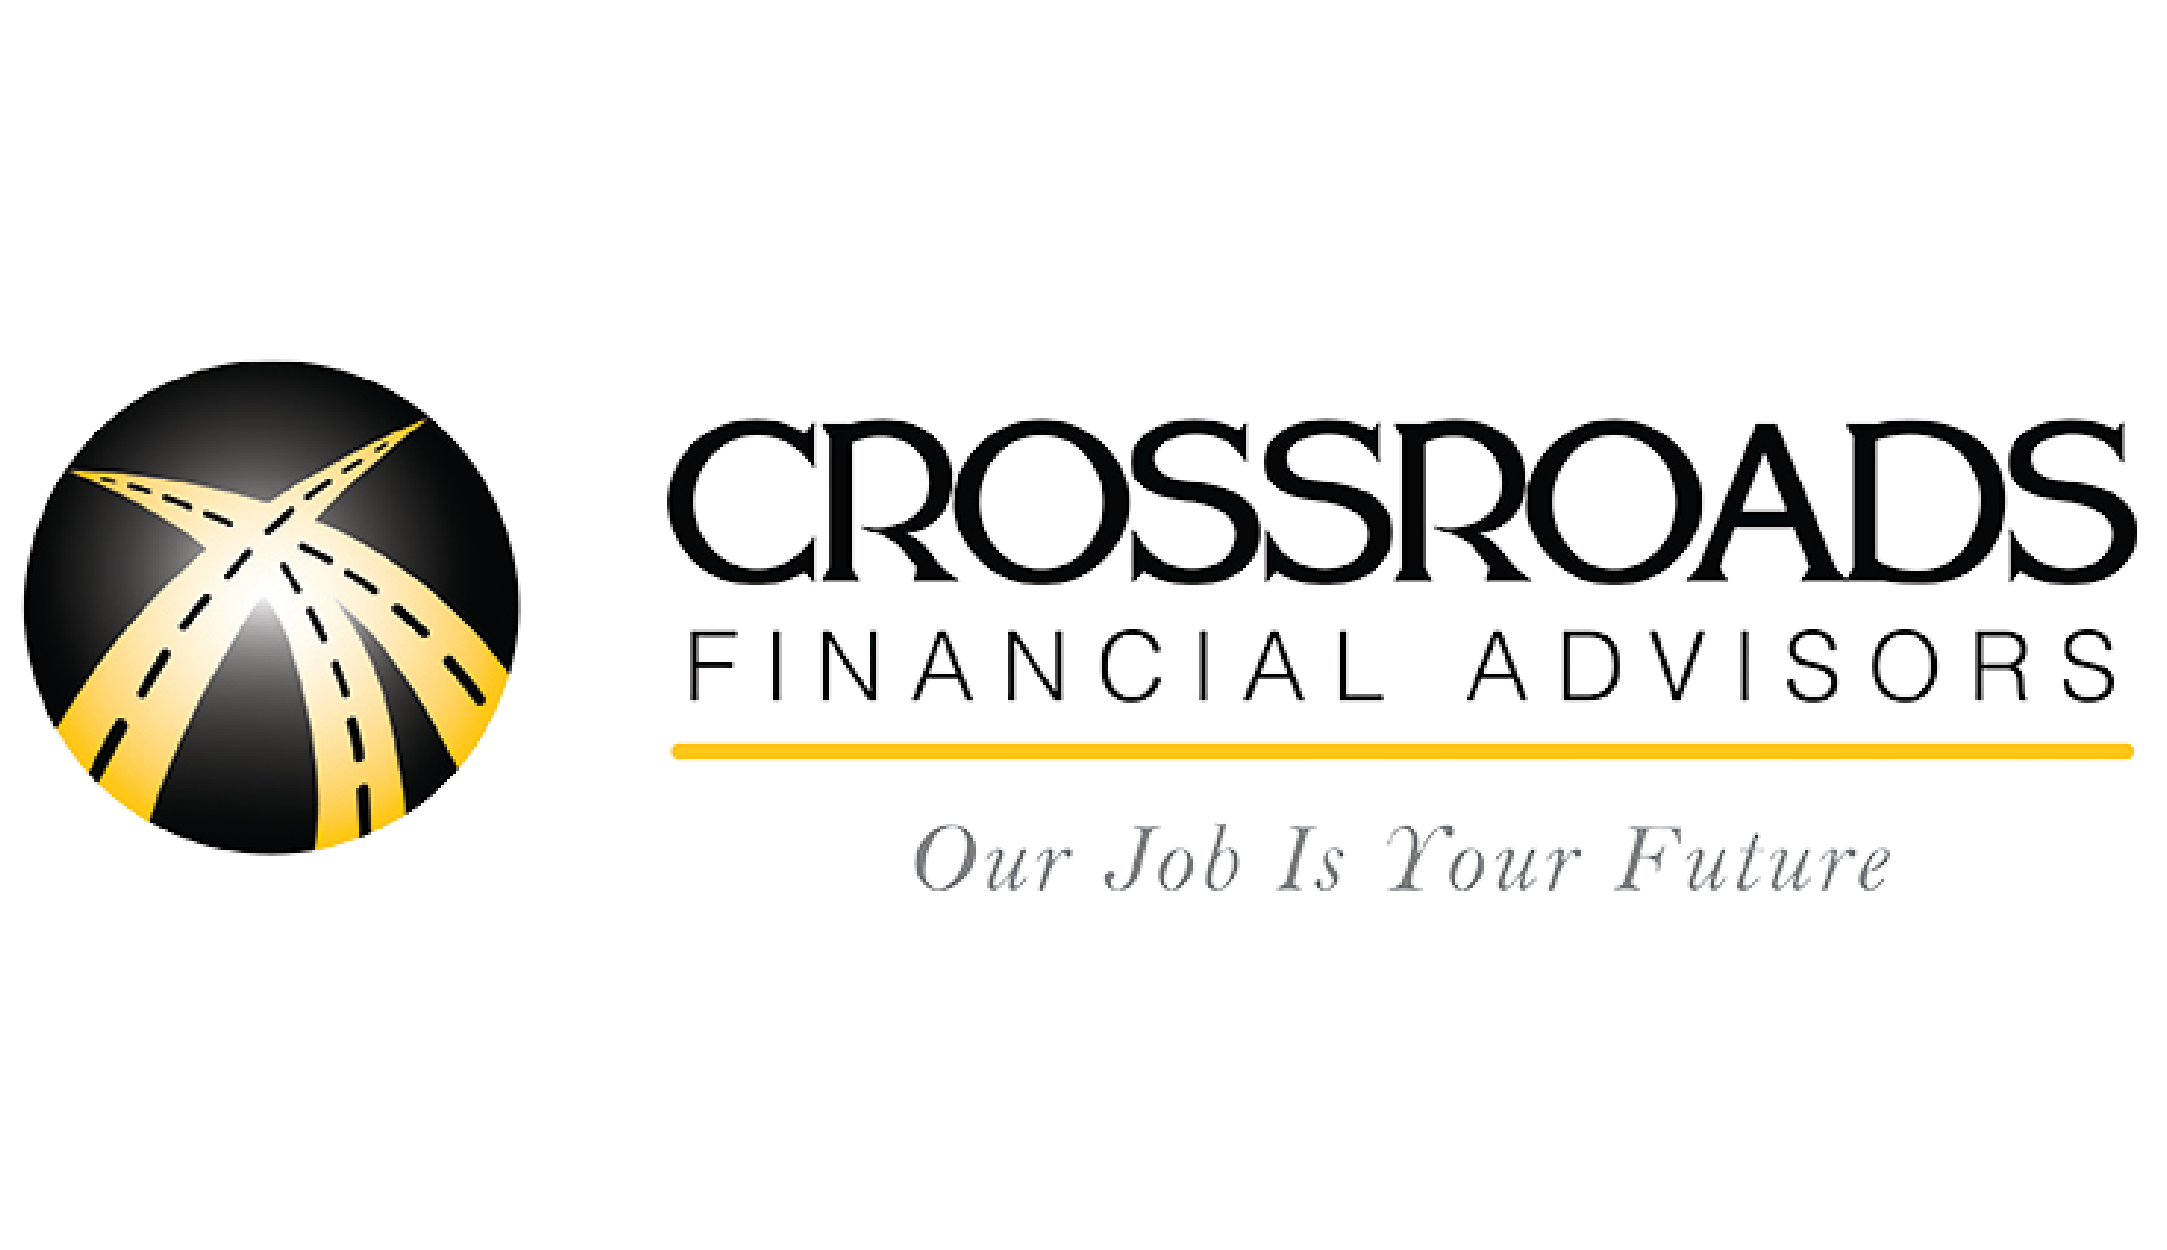 Crossroads Financial Advisors